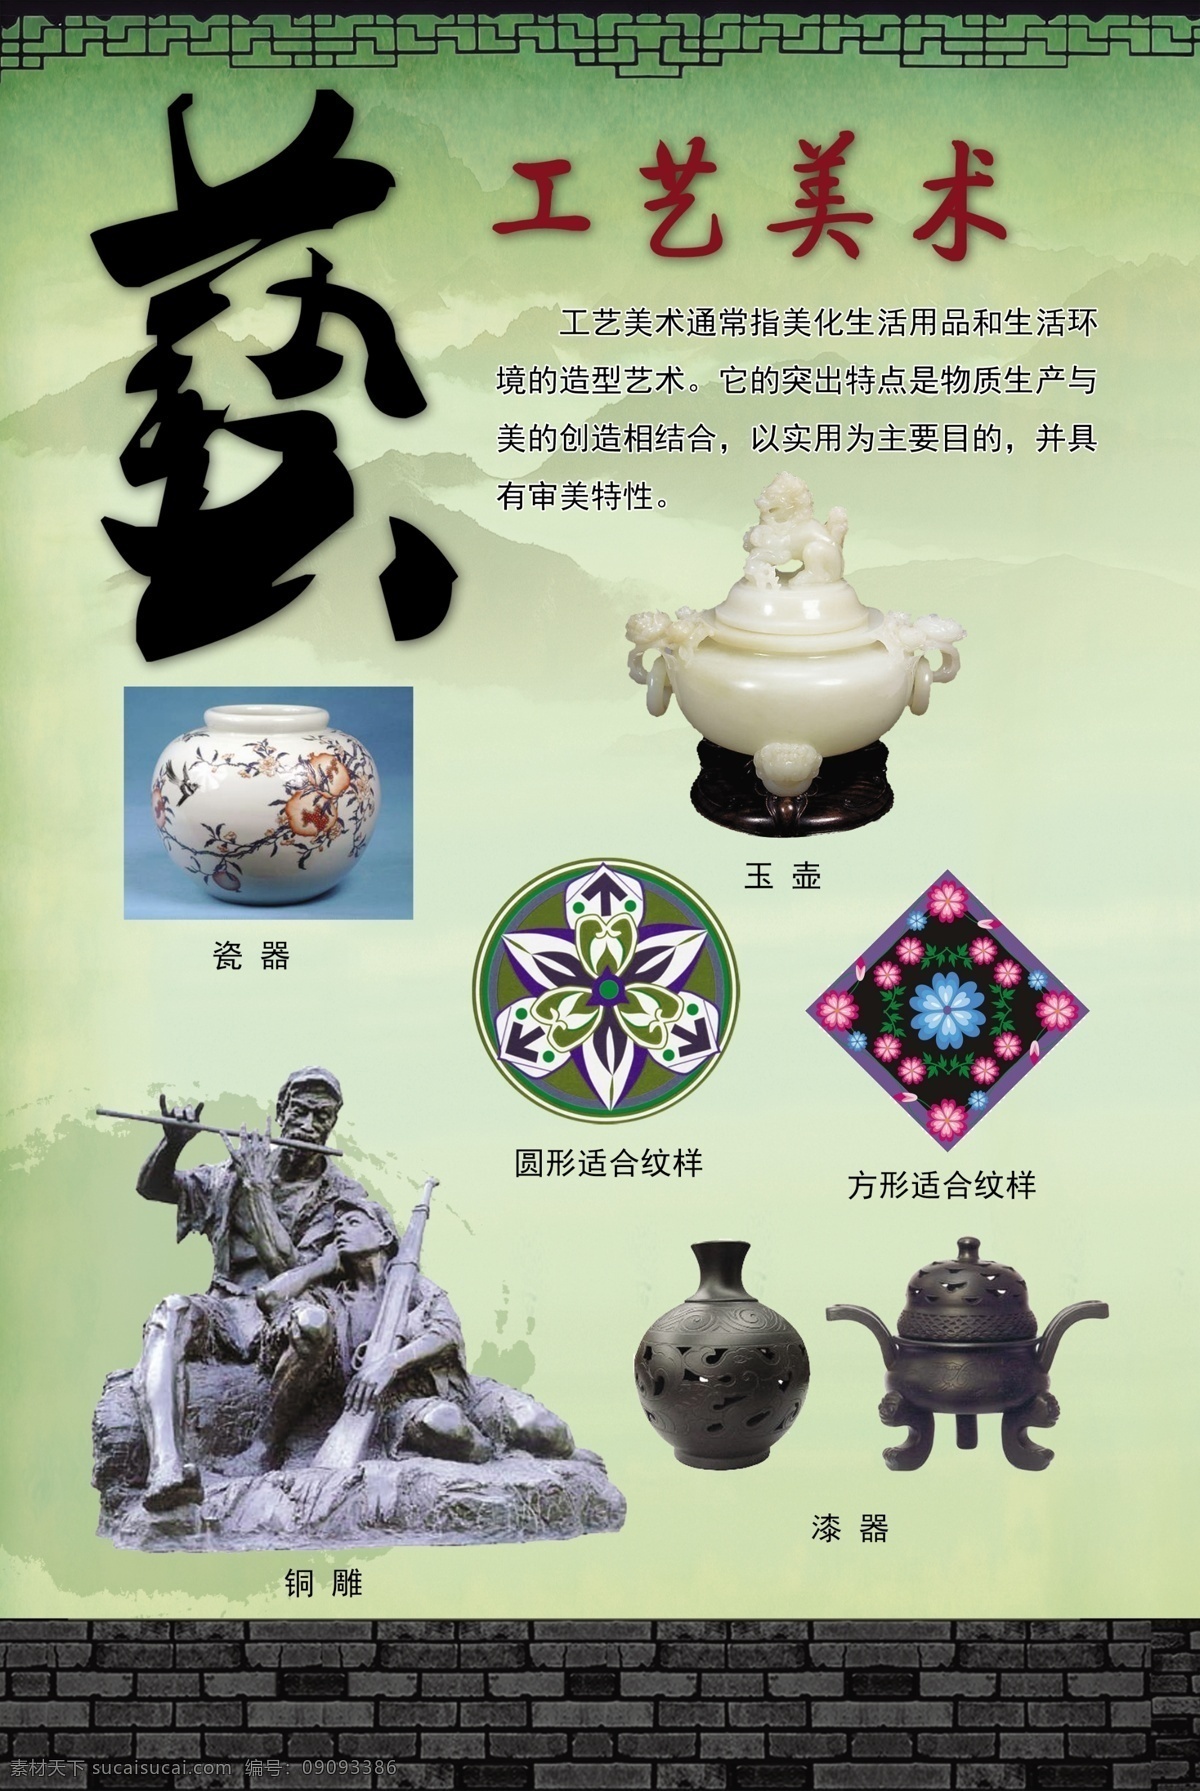 工艺美术 中国民艺 校园 手工 艺术 漆器 铜雕 瓷器 玉壶 学校文化 底纹边框 背景底纹